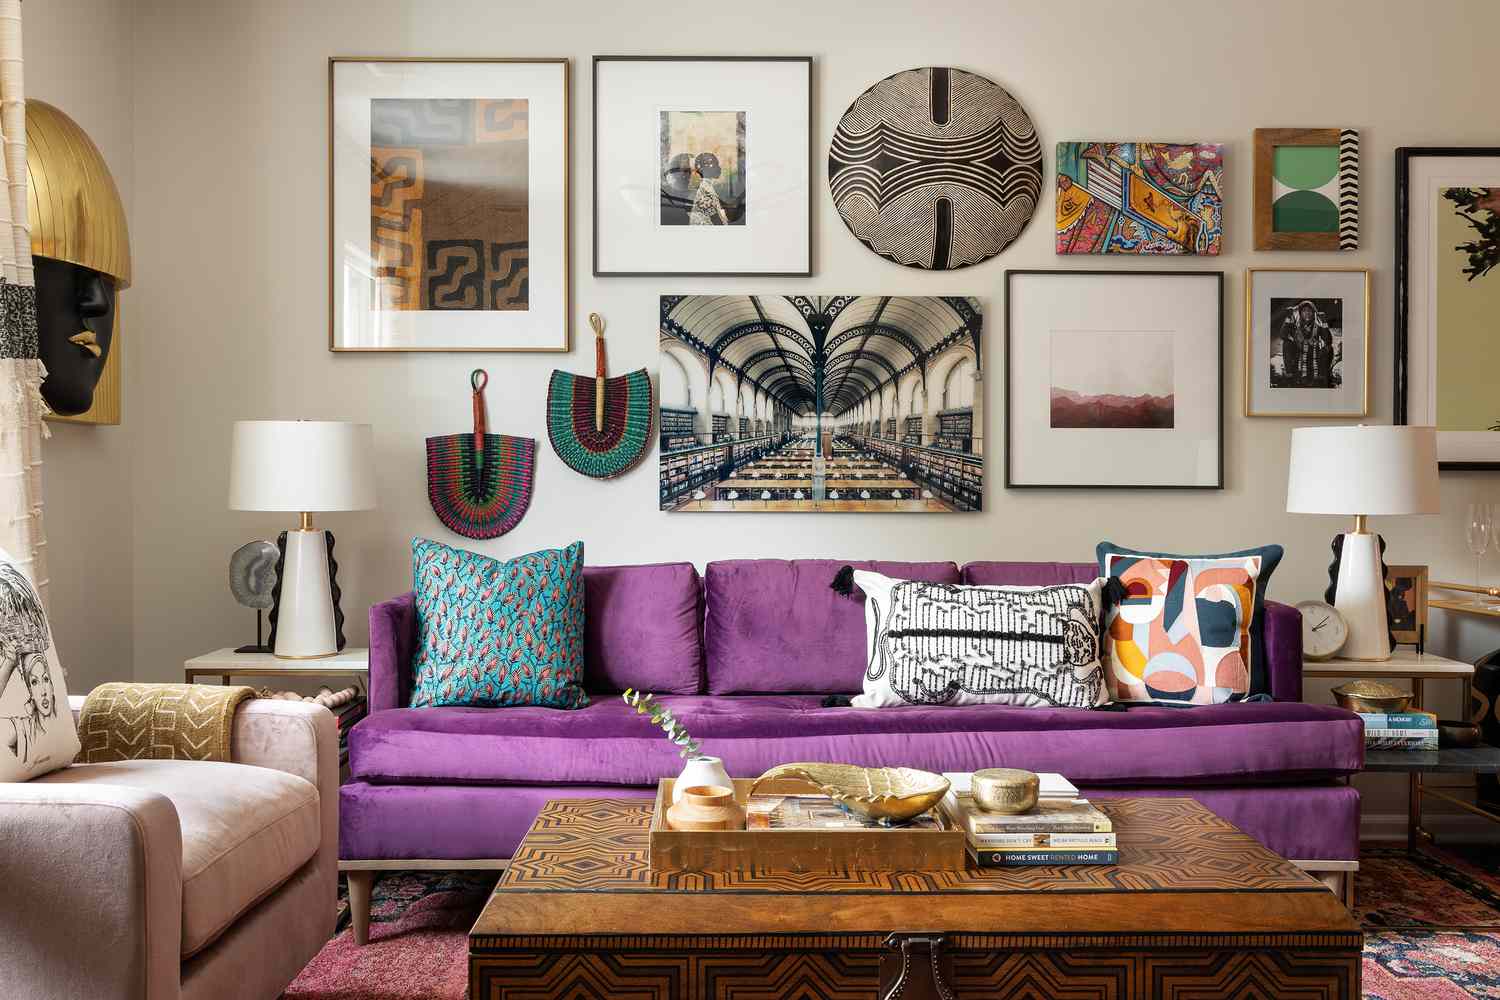  Das Wohnzimmer von Beth Diana Smith in Irvington, NJ, zeigt ein lila Sofa in ihrem eklektischen, maximalistischen Stil